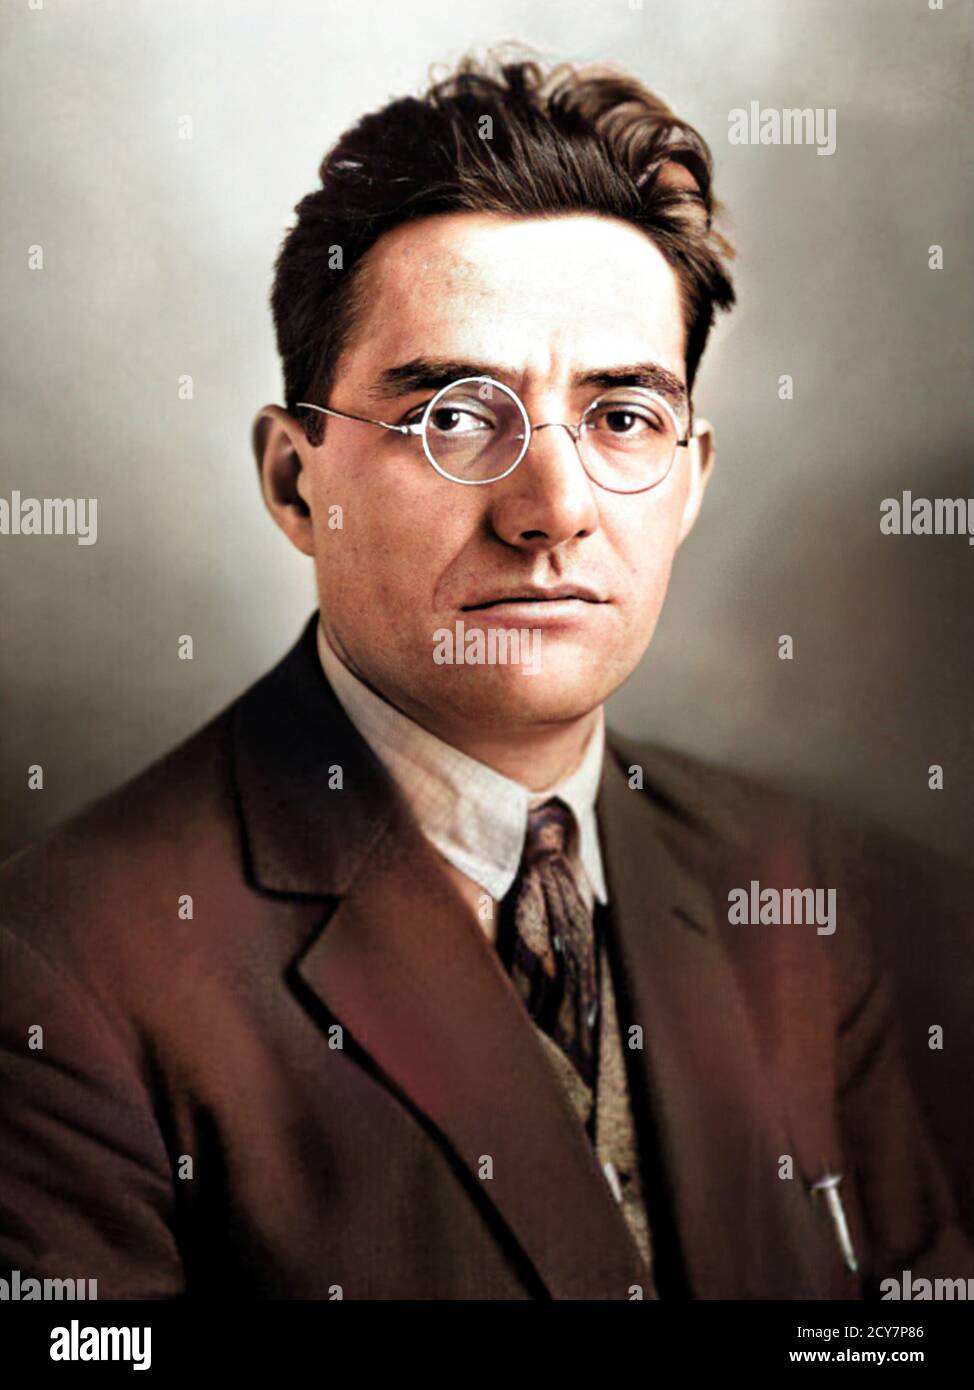 1927 c., Paris , FRANCE : le politicien et journaliste fasciste français JACQUES DORIOT ( 1898 - 1945 ). Photographe inconnu . COLORIÉ NUMÉRIQUEMENT .- POLITICO - POLITICA - POLITIQUE - FASCISTA - FASCISMO FRANCESE - FASCISME - FRANCIA - foto storiche - HISTOIRE - portrait - ritratto - lentille - occhiali da vista - GIORNALISMO - JOURNALISTE - JOURNALISME - GIORNALISTA - TIE - cravatta --- ARCHIVIO GBB Banque D'Images